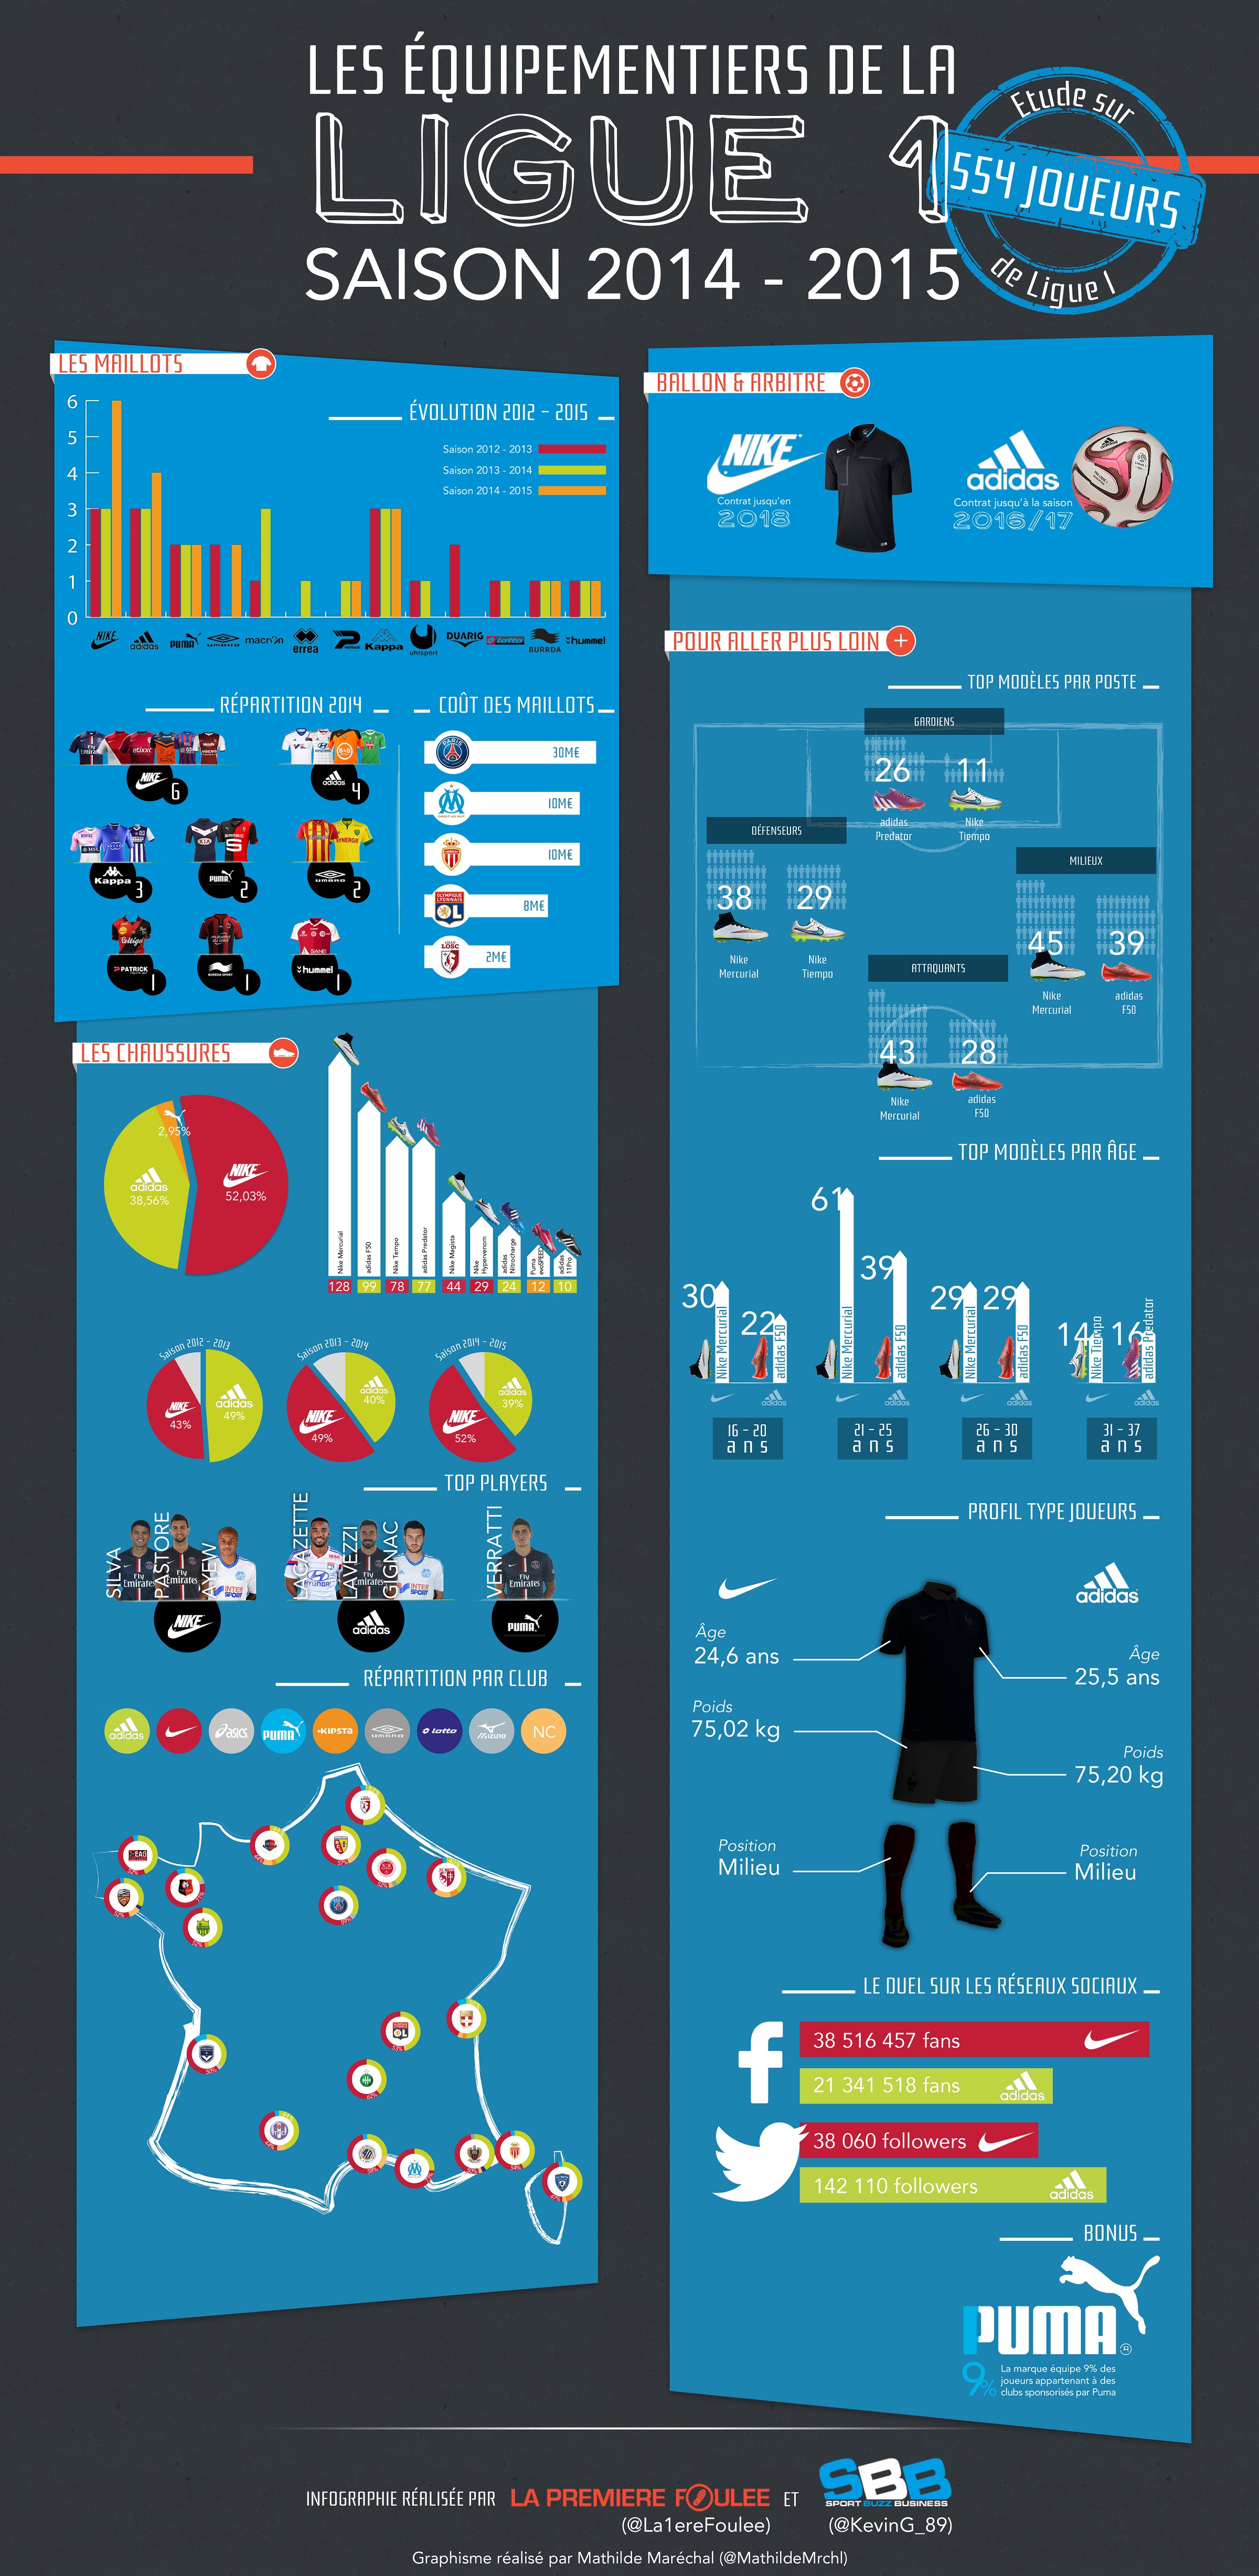 Infographie Les équipementiers de la Ligue 1 2014-2015 (nike-adidas-Puma)